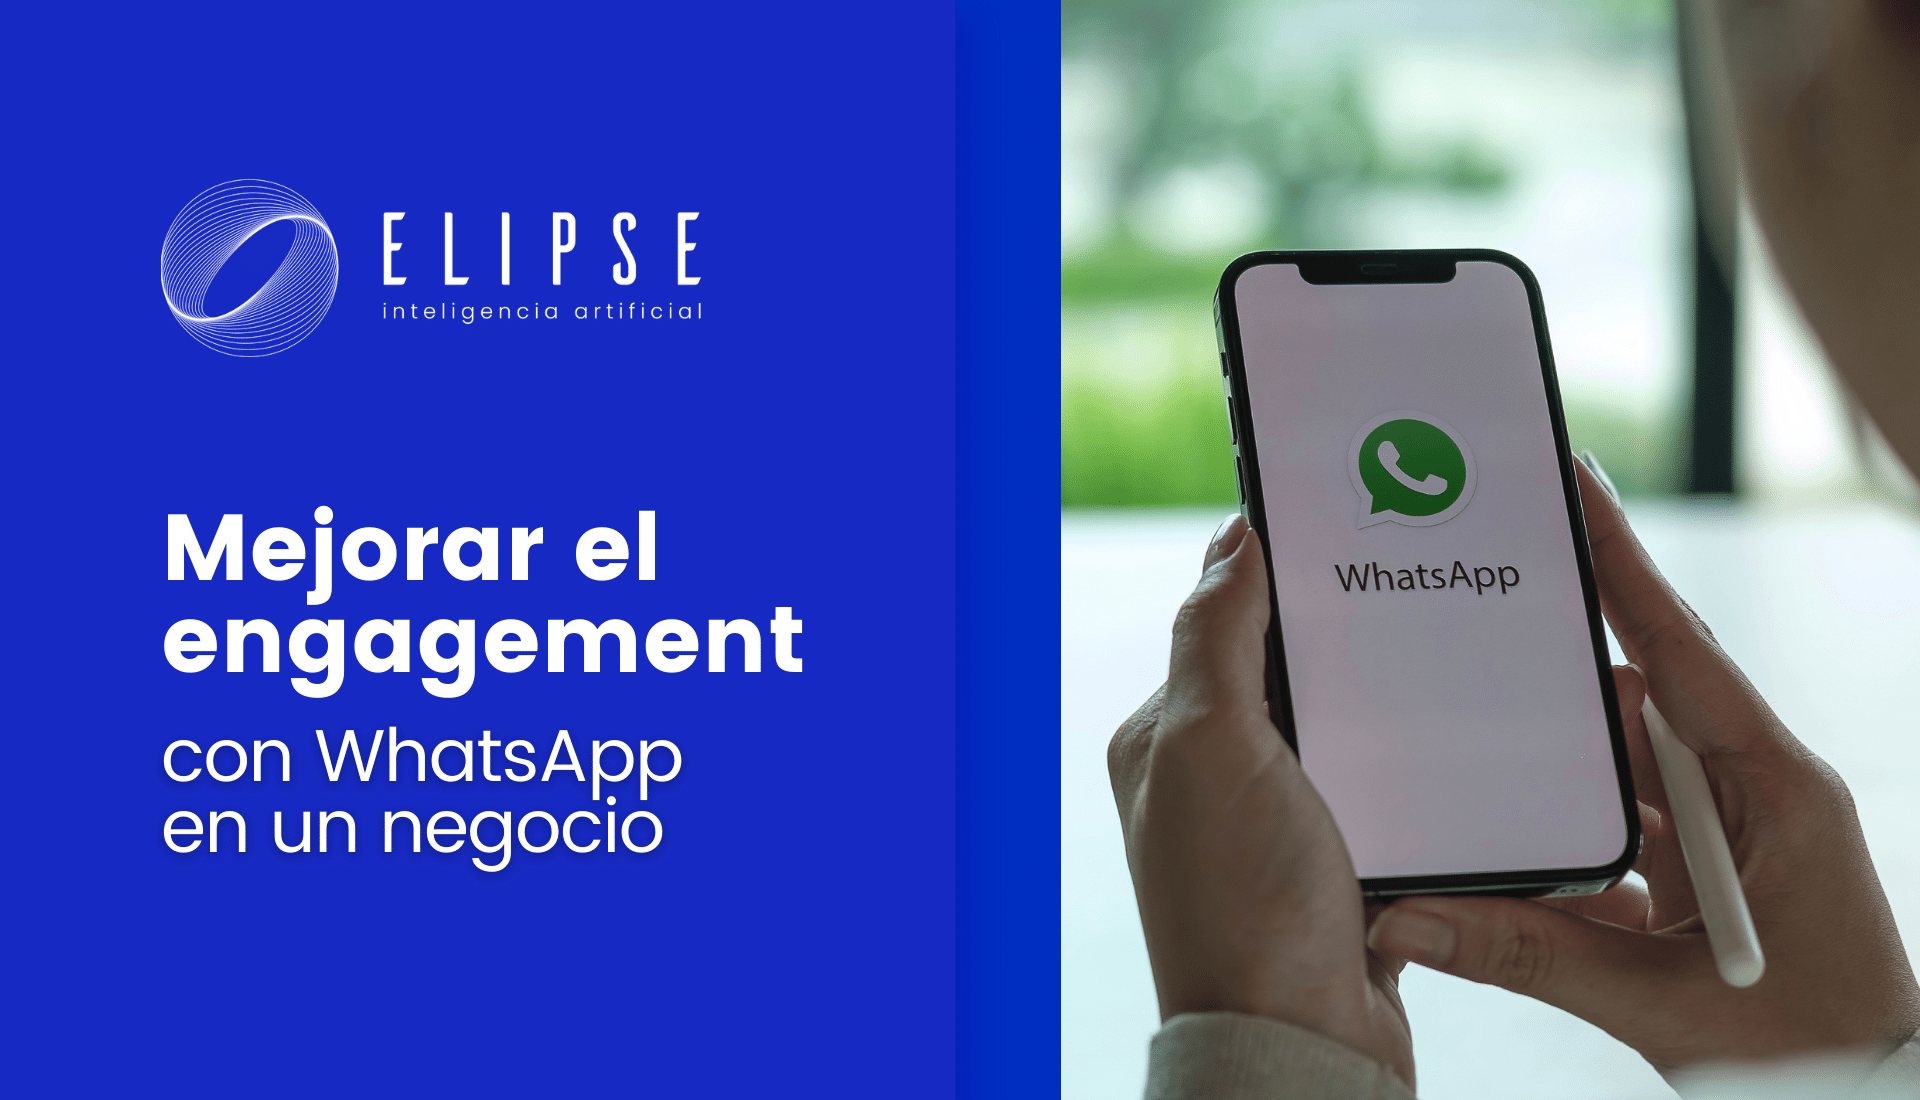 Mejorar el engagement con WhatsApp en un negocio 